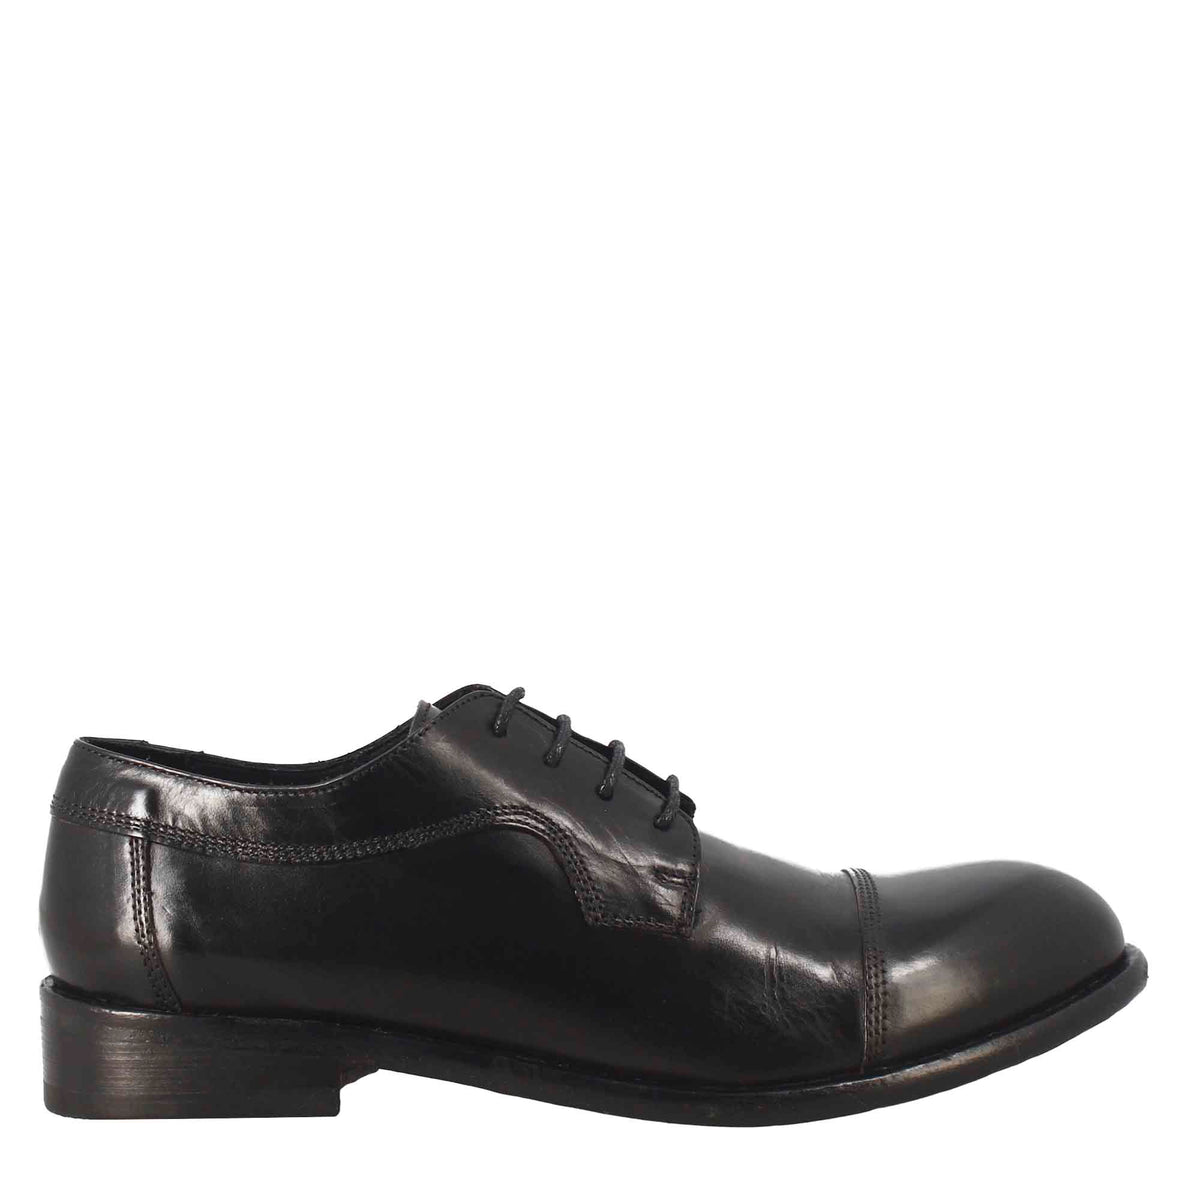 Chaussure basse à lacets pour femmes en cuir noir